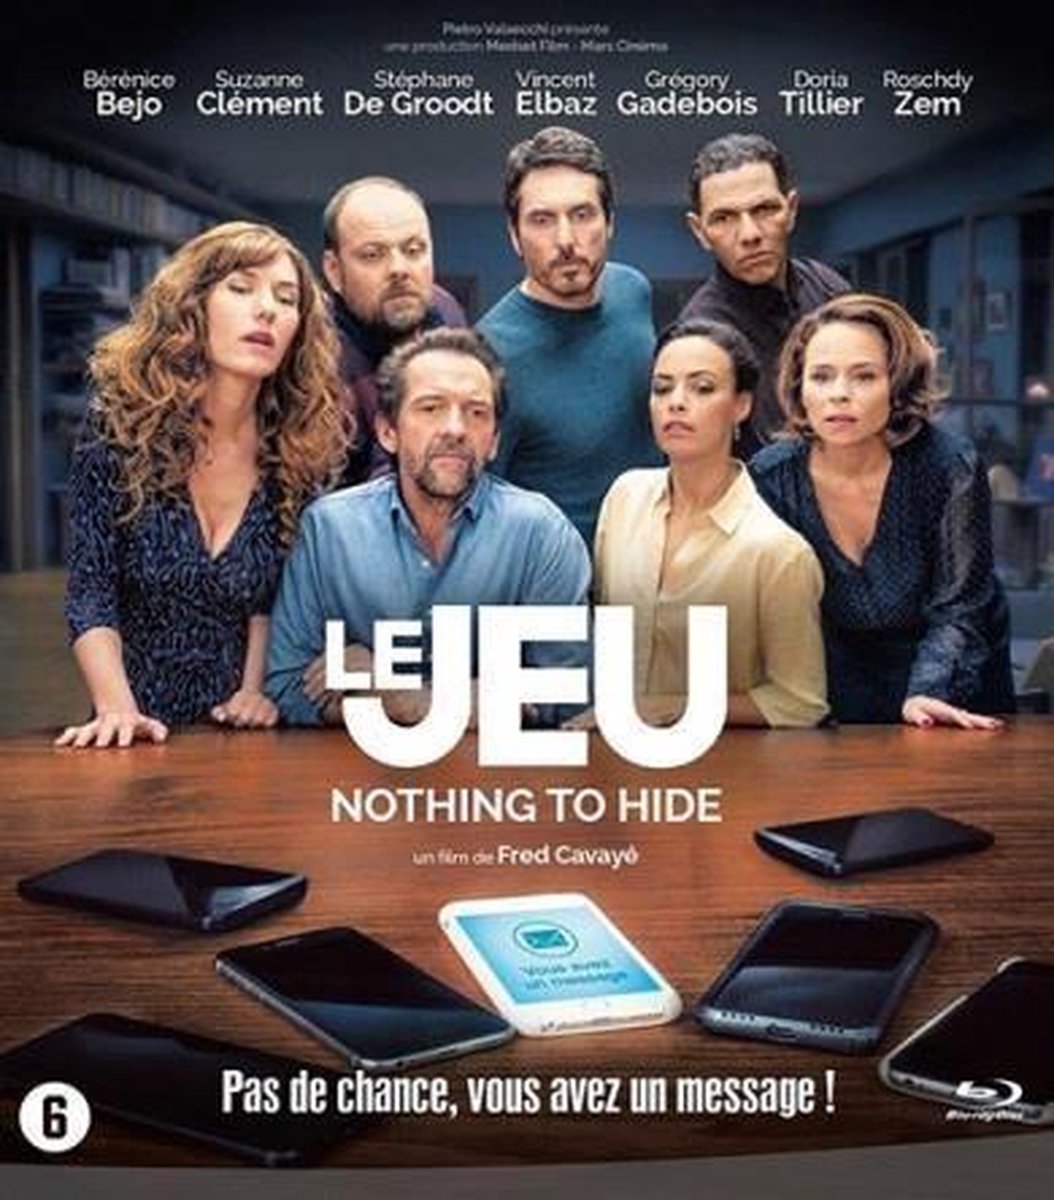 Le jeu (Blu-ray) (Geen Nederlandse ondertiteling)